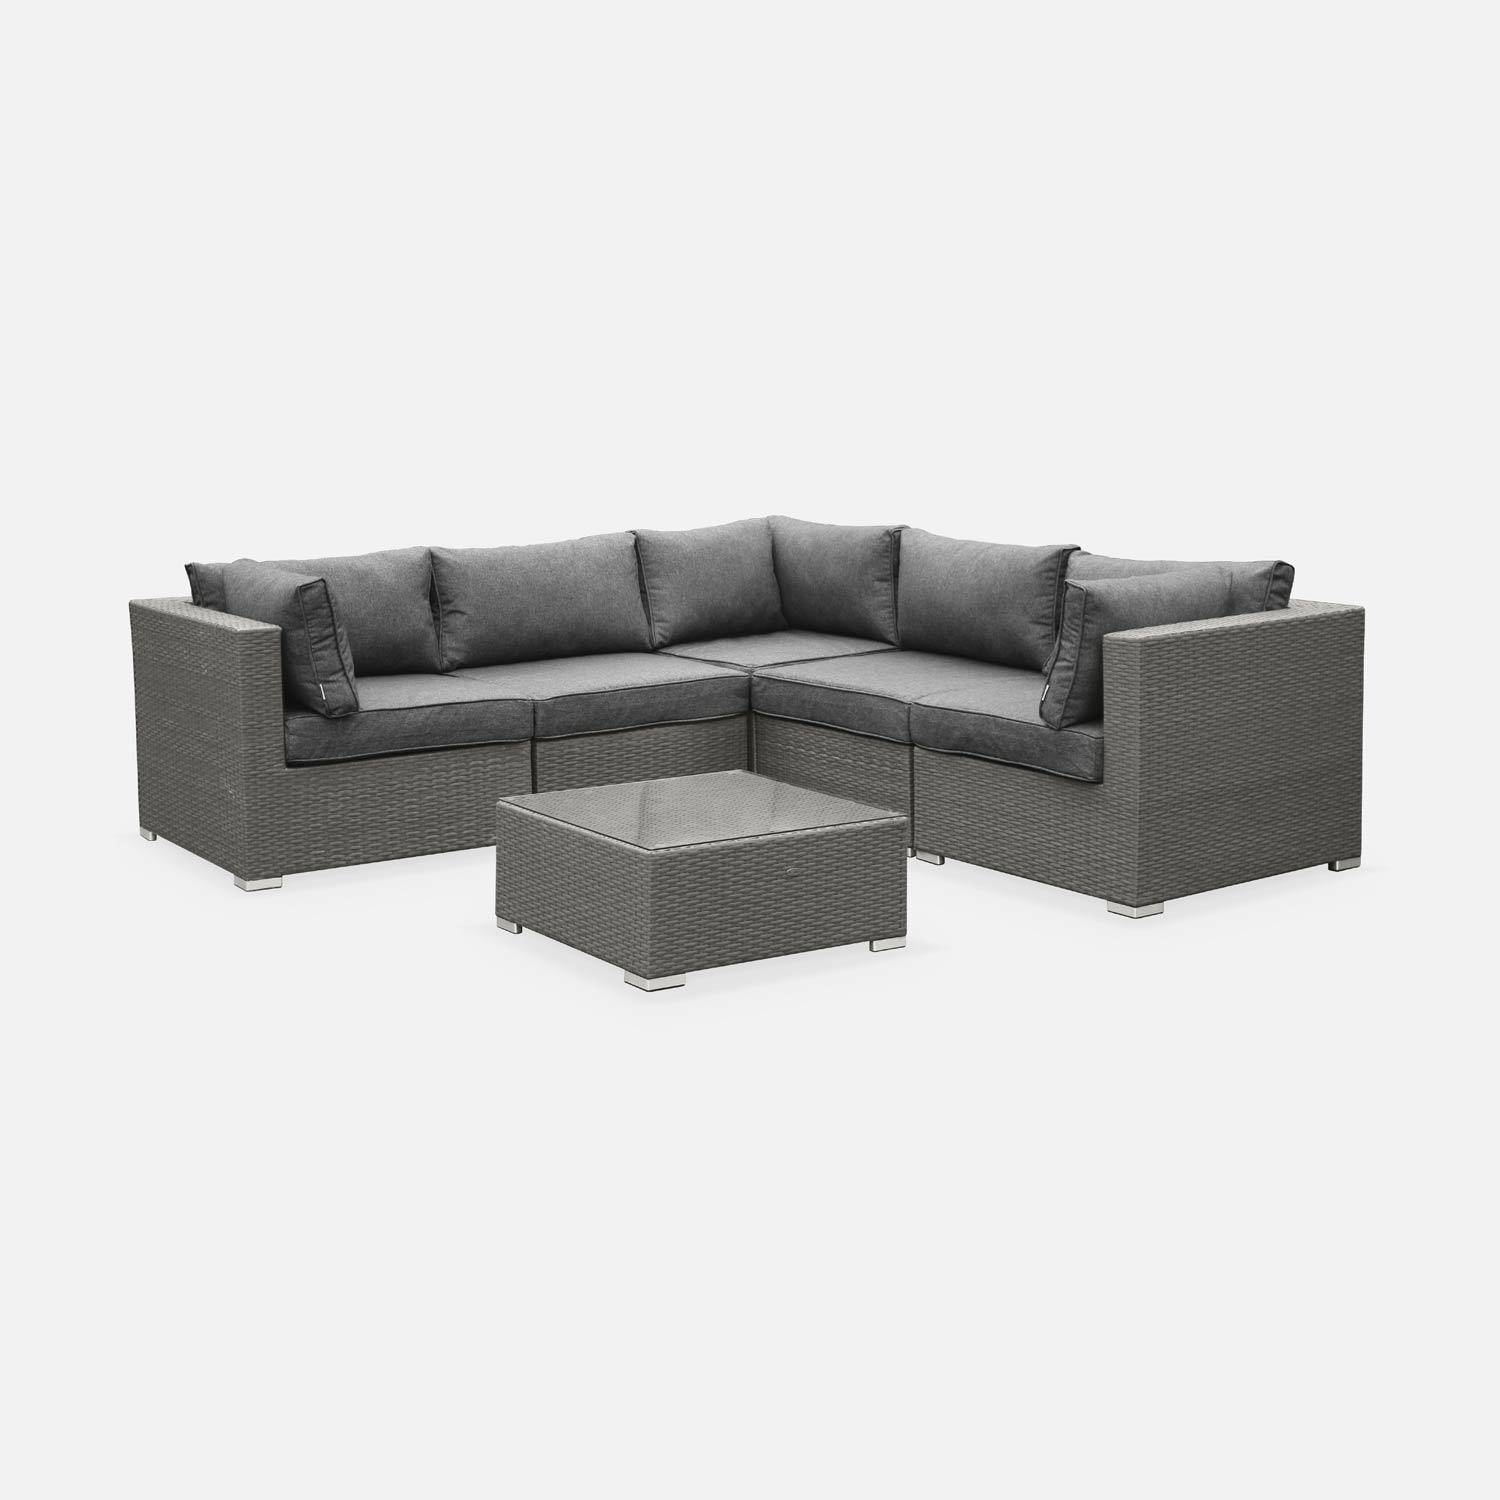 Gartengarnitur aus Kunststoffrattan - Napoli - grau, graumelierte Kissen - 5 Sitze - 2 Sessel ohne Armlehnen, 3 Ecksessel, ein Couchtisch Photo2